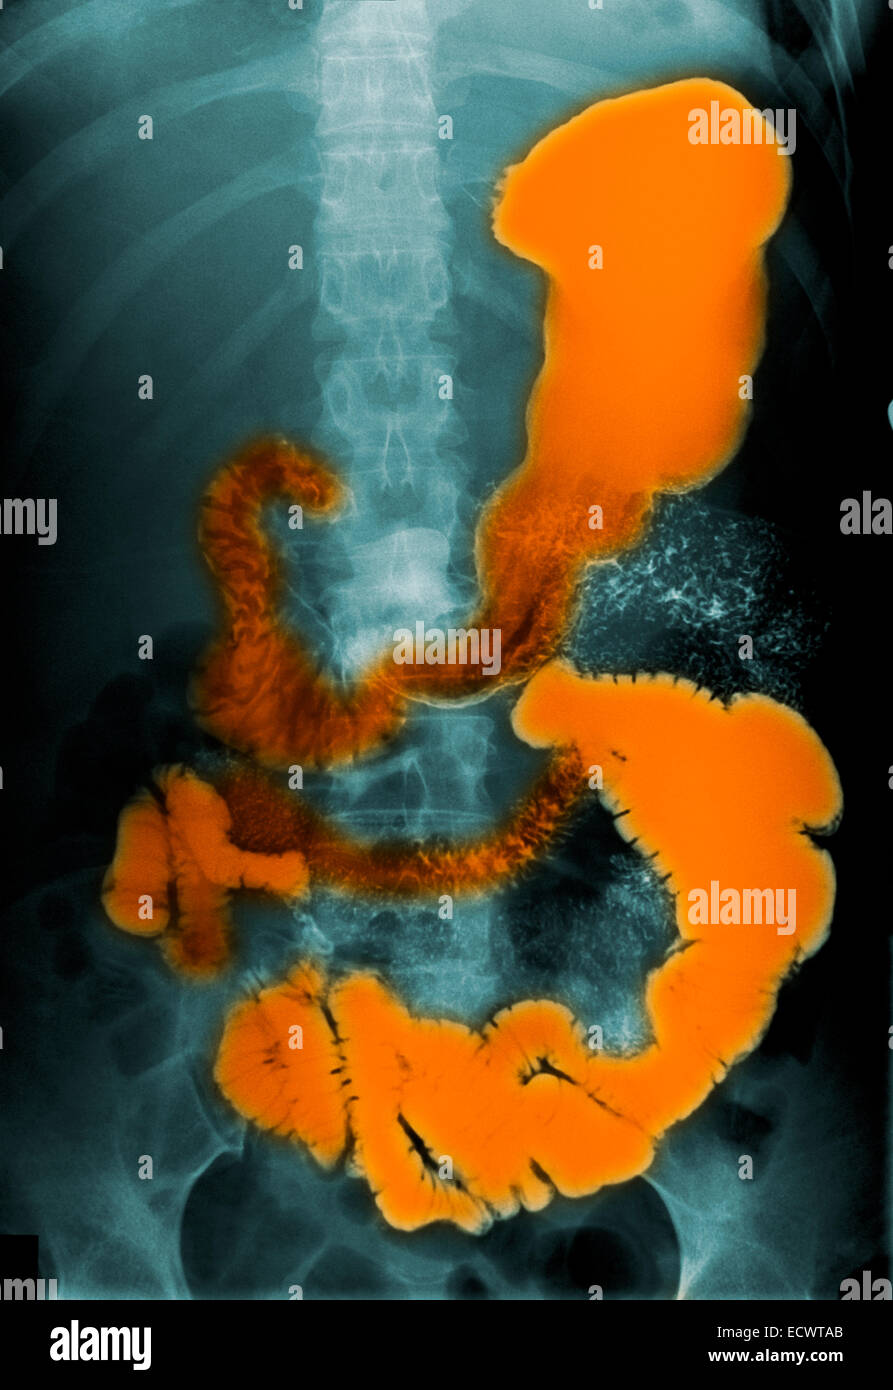 Radiografía de abdomen muestra material de contraste de bario en el intestino. Foto de stock